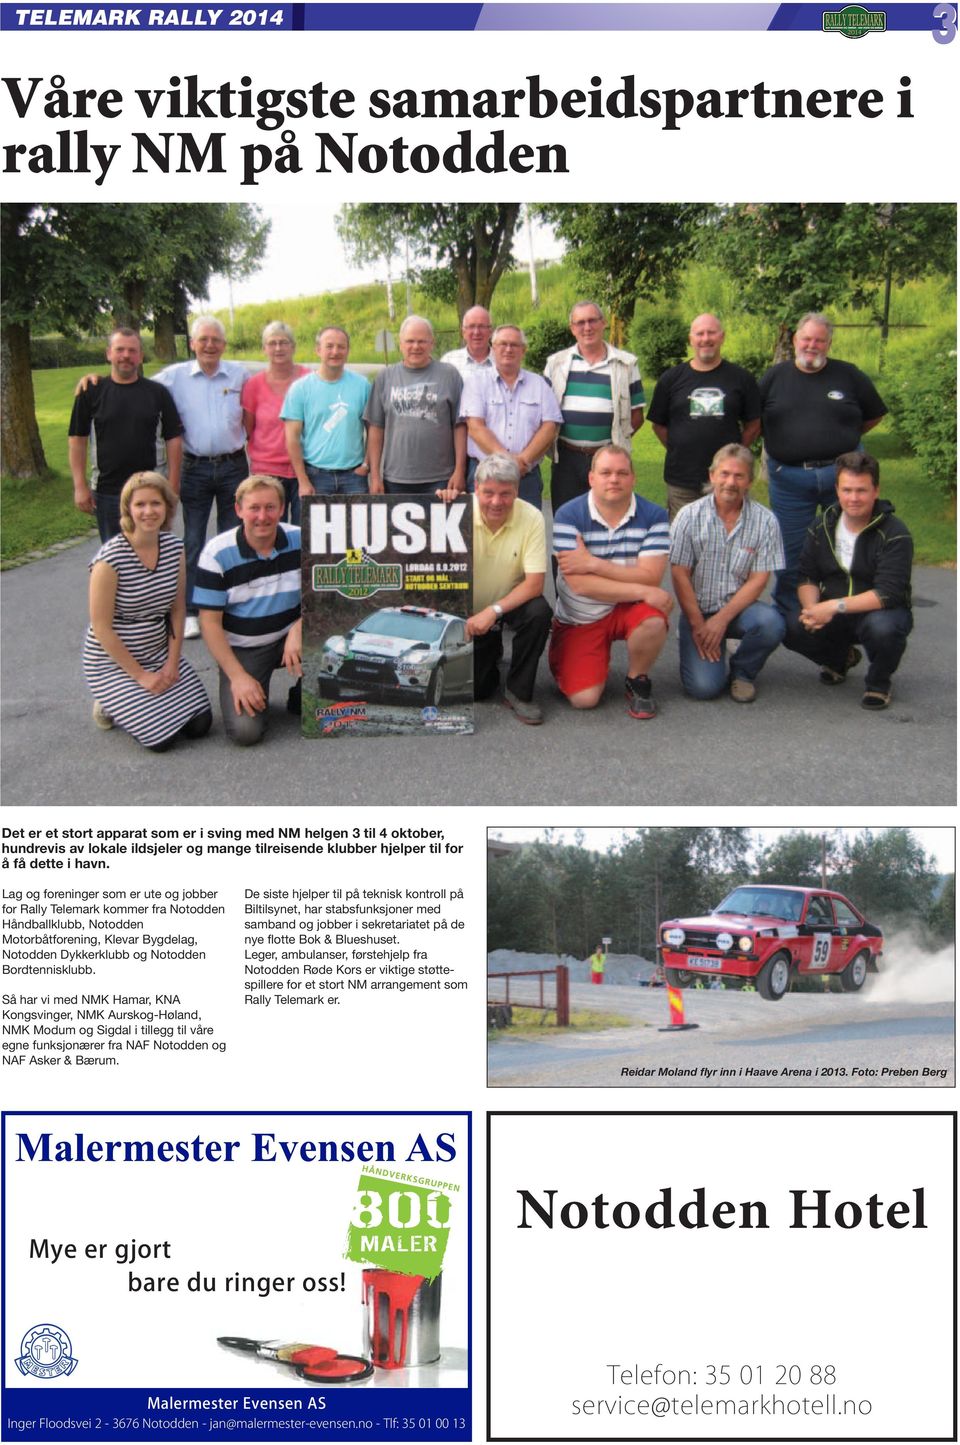 Lag og foreninger som er ute og jobber for Rally Telemark kommer fra Notodden Håndballklubb, Notodden Motorbåtforening, Klevar Bygdelag, Notodden Dykkerklubb og Notodden Bordtennisklubb.